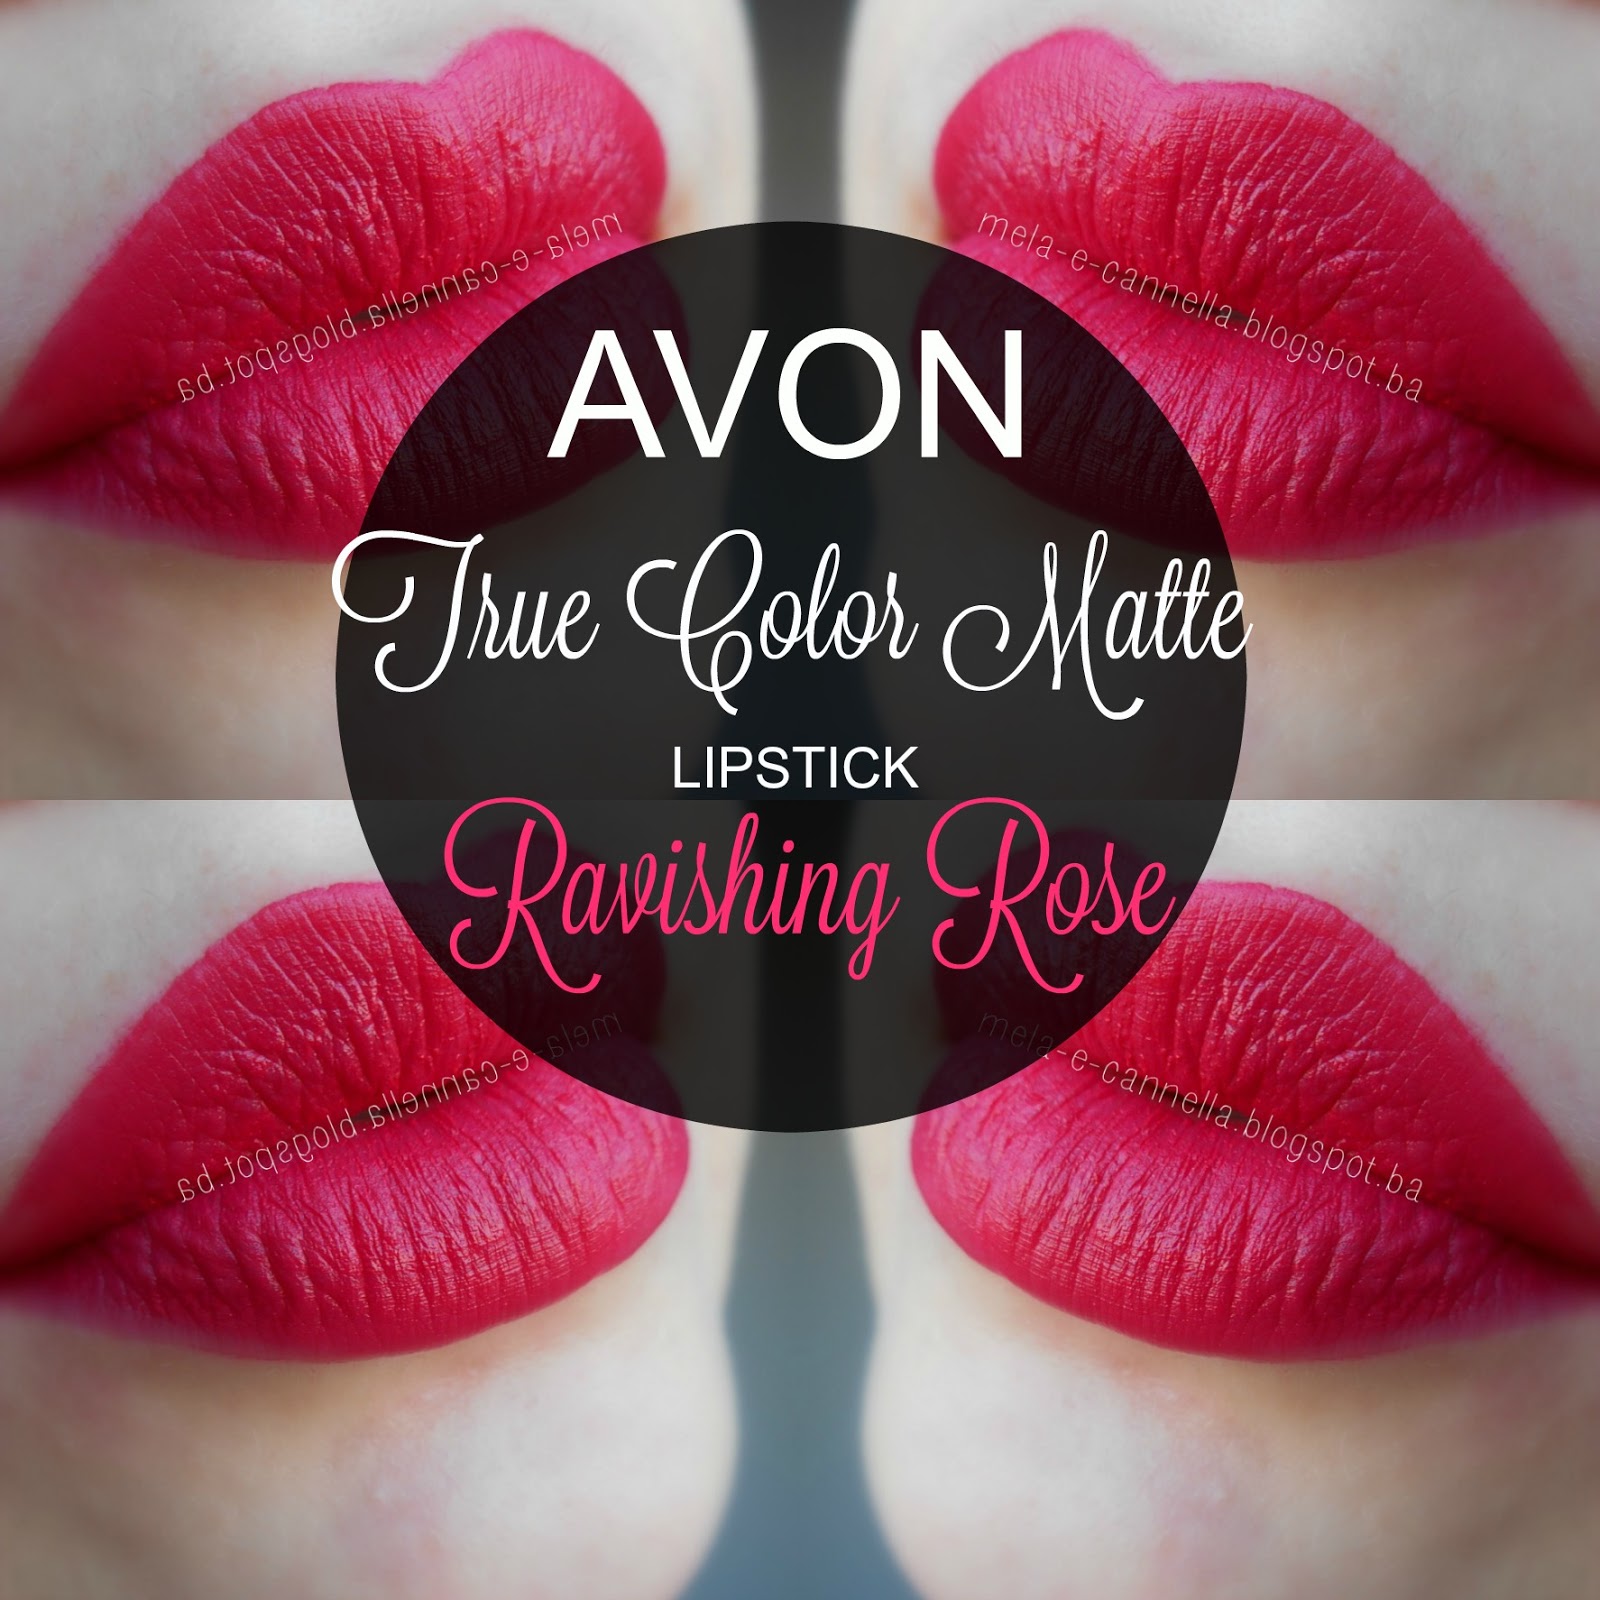 mela-e-cannella: Avon True Color Matte Lipstick ...